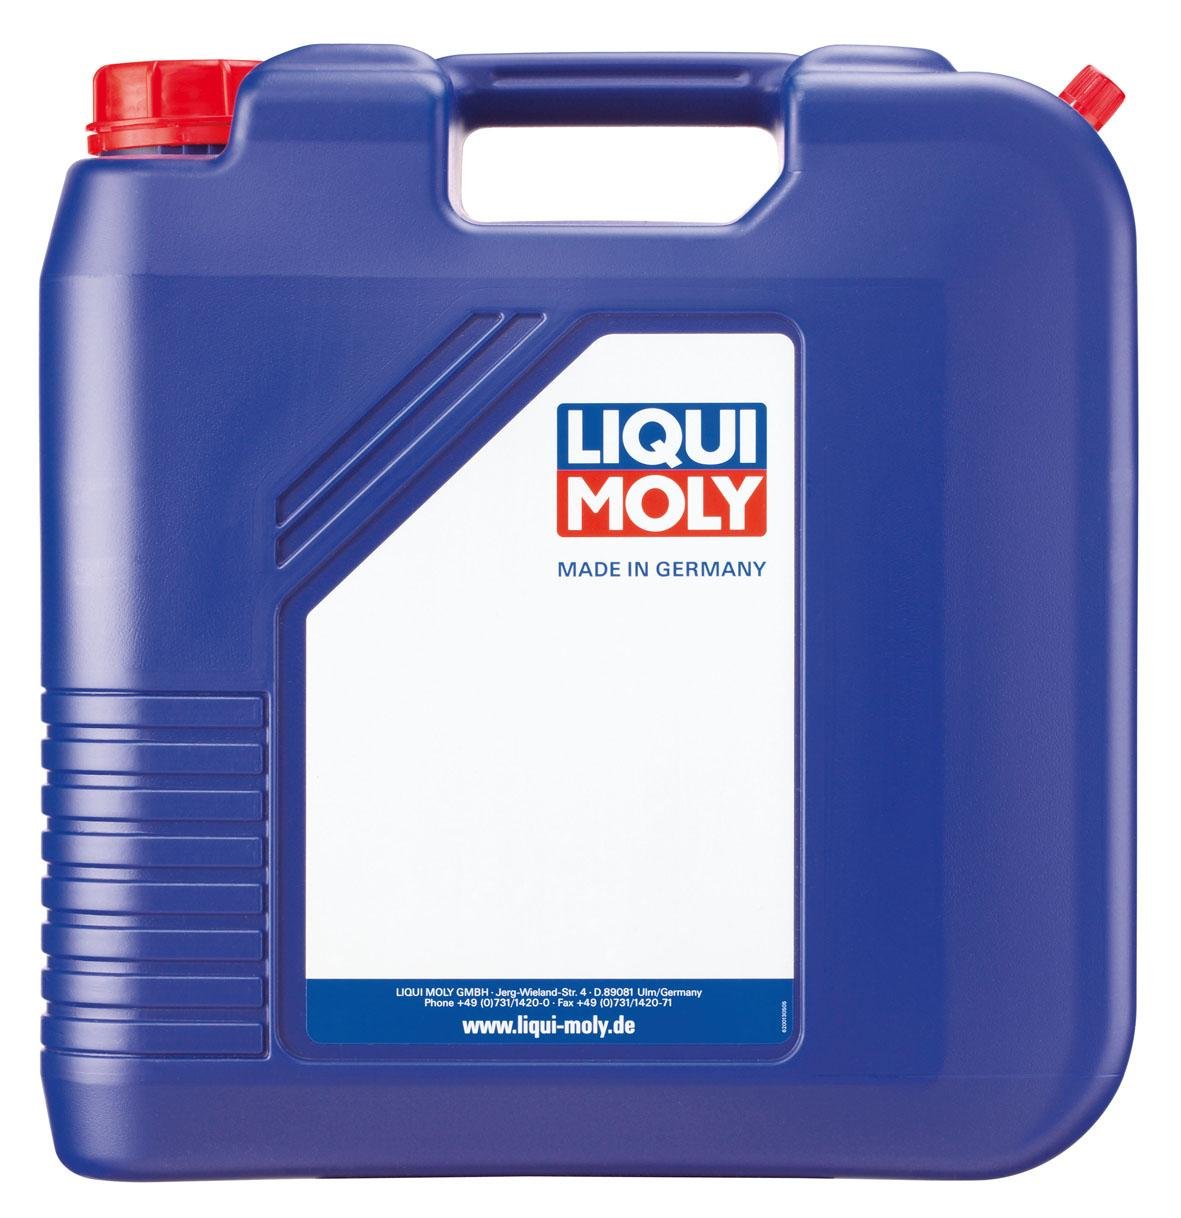 LIQUI MOLY Hydrauliköl HLP 15 | 20 L | Getriebeöl | Hydrauliköl | Art.-Nr.: 4790 von Liqui Moly